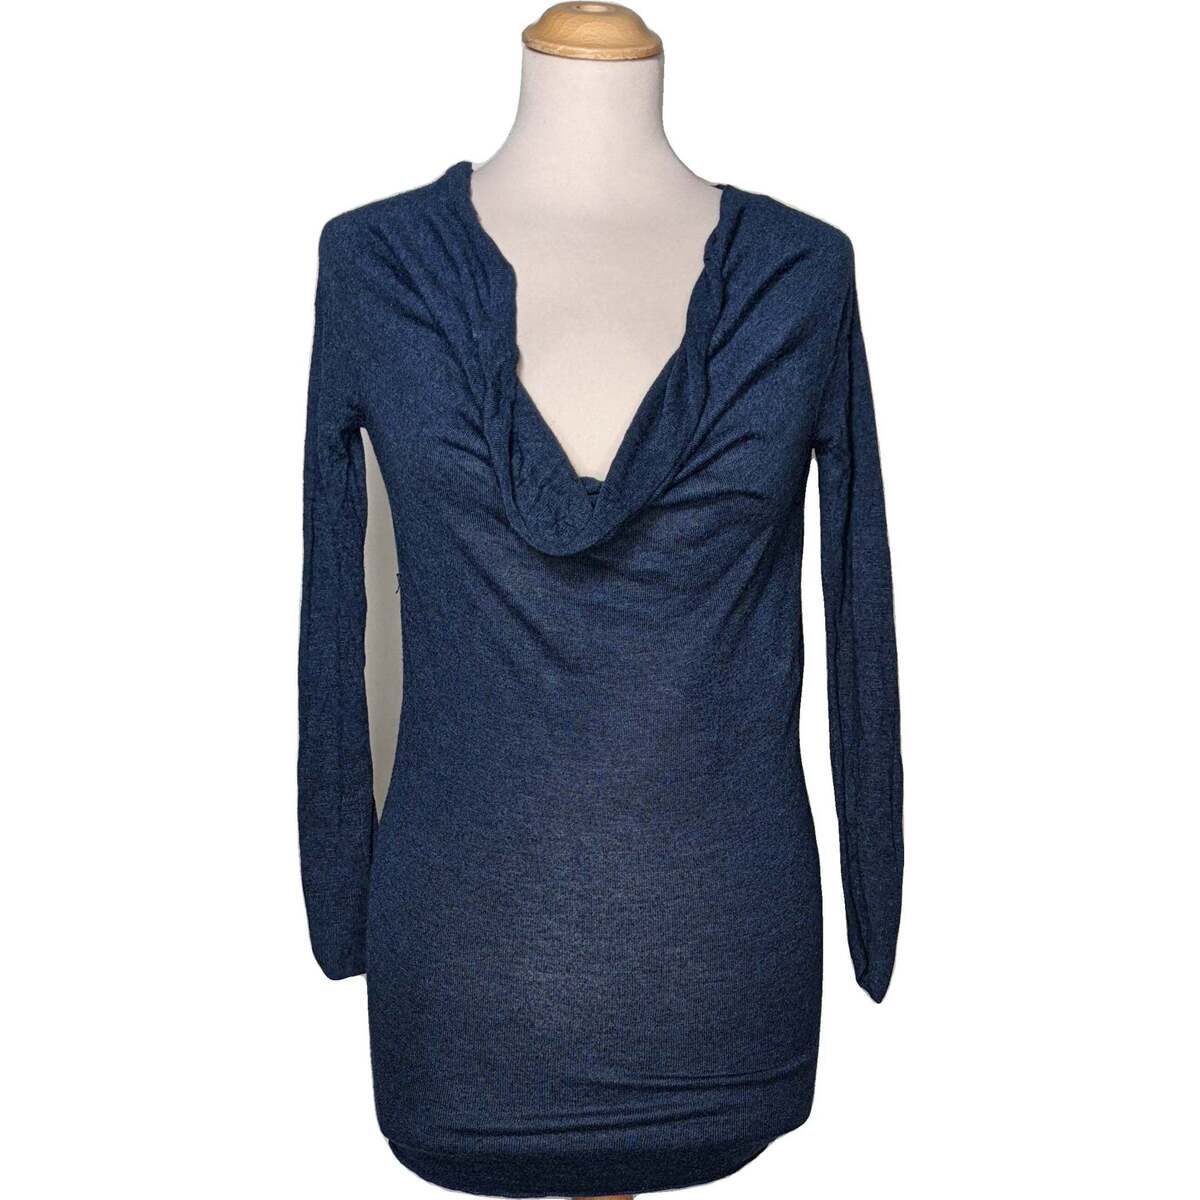 Vêtements Femme I Love Running hoodie top manches longues  36 - T1 - S Bleu Bleu